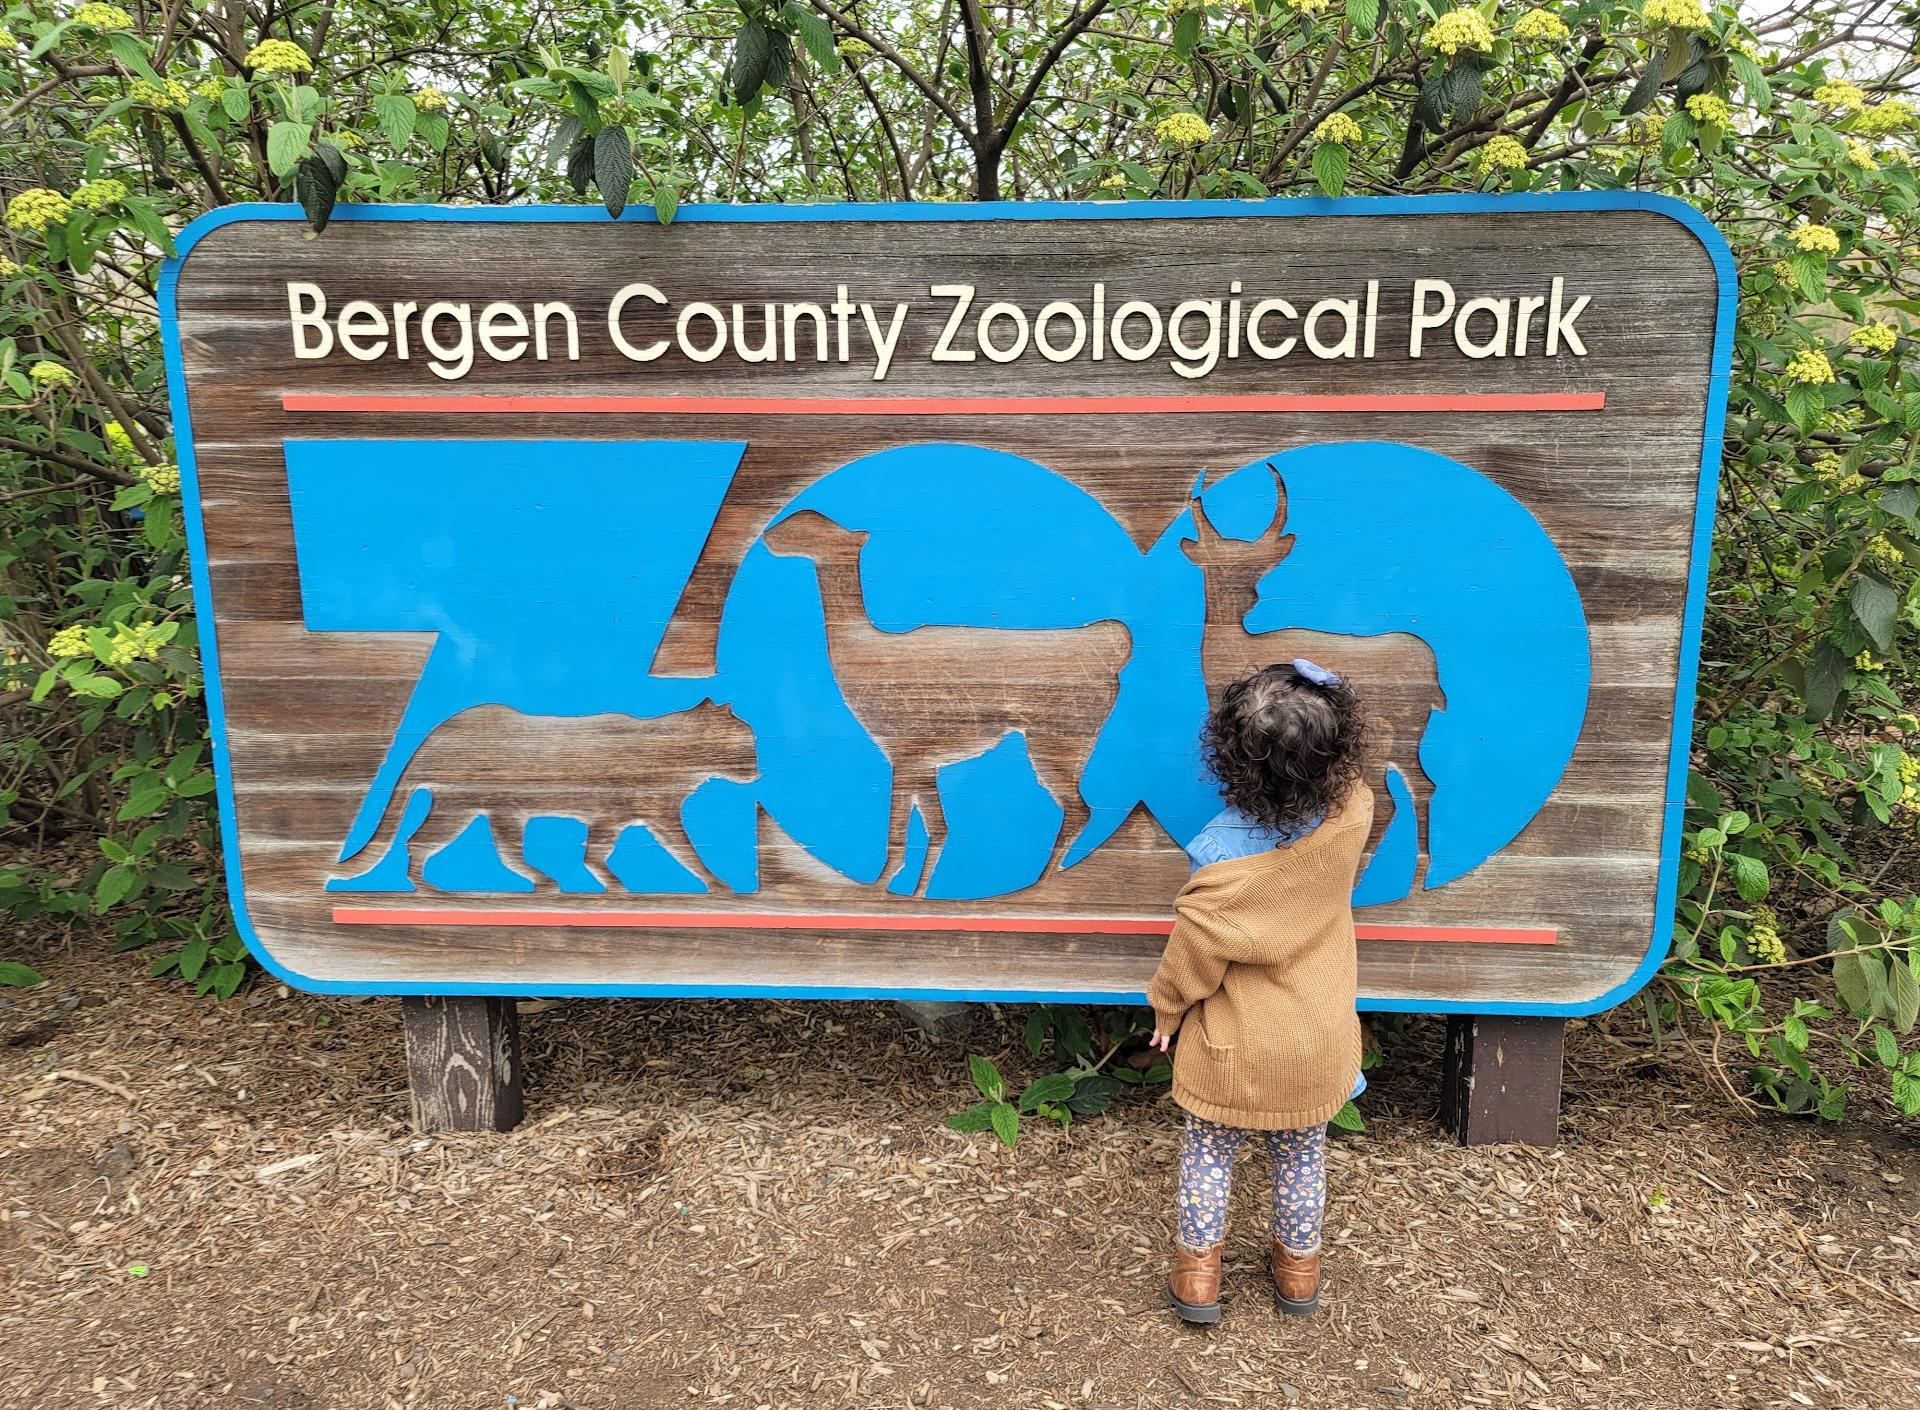 Zoo della contea di Bergen